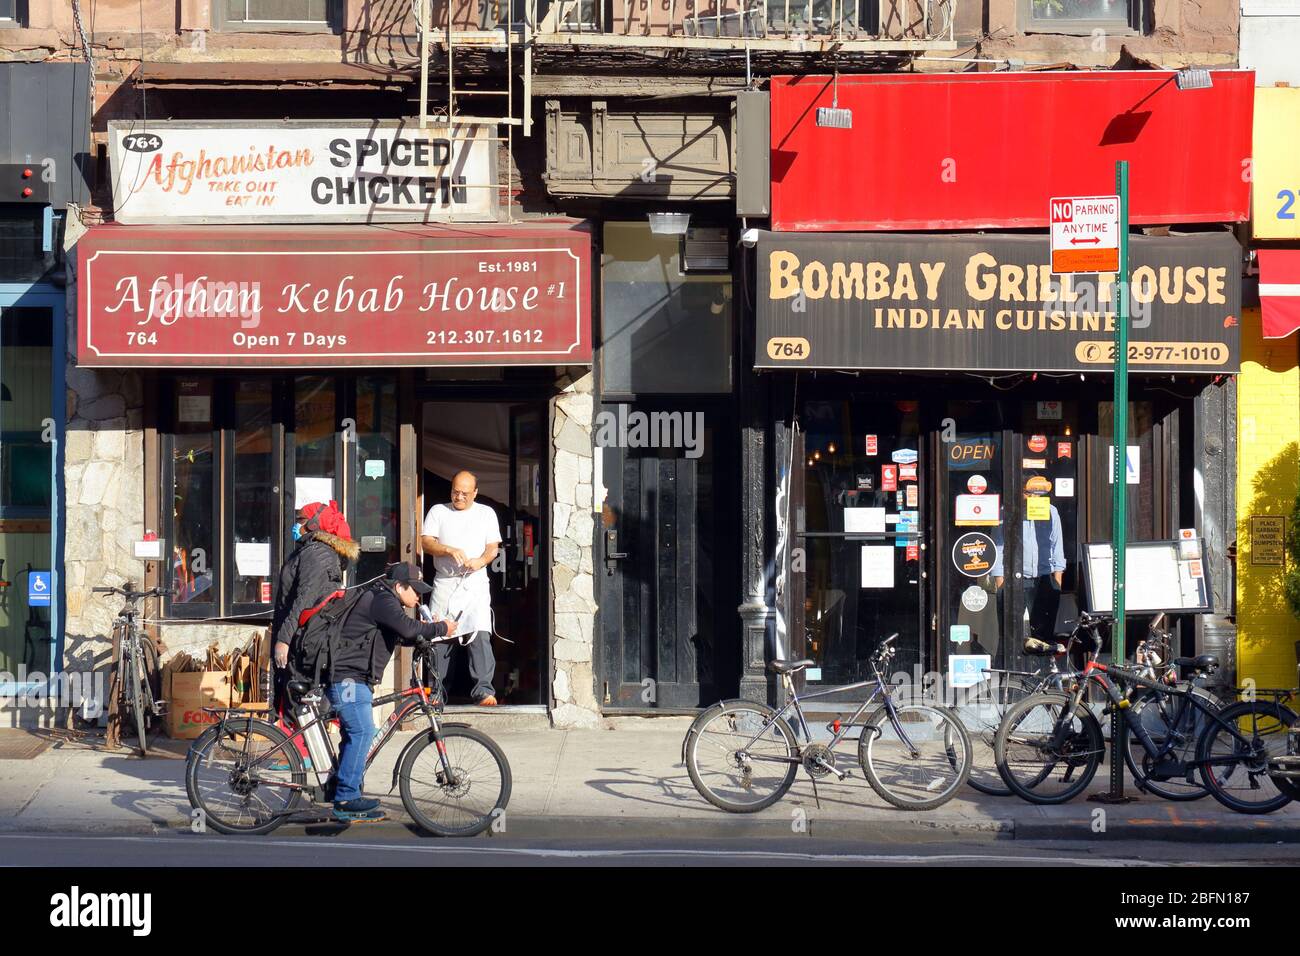 Afghan Kebab House, Bombay Grill House, 764 9. Ave, New York, NYC Schaufenster Foto eines afghanischen und indischen Restaurants in Hells Kitchen. Stockfoto